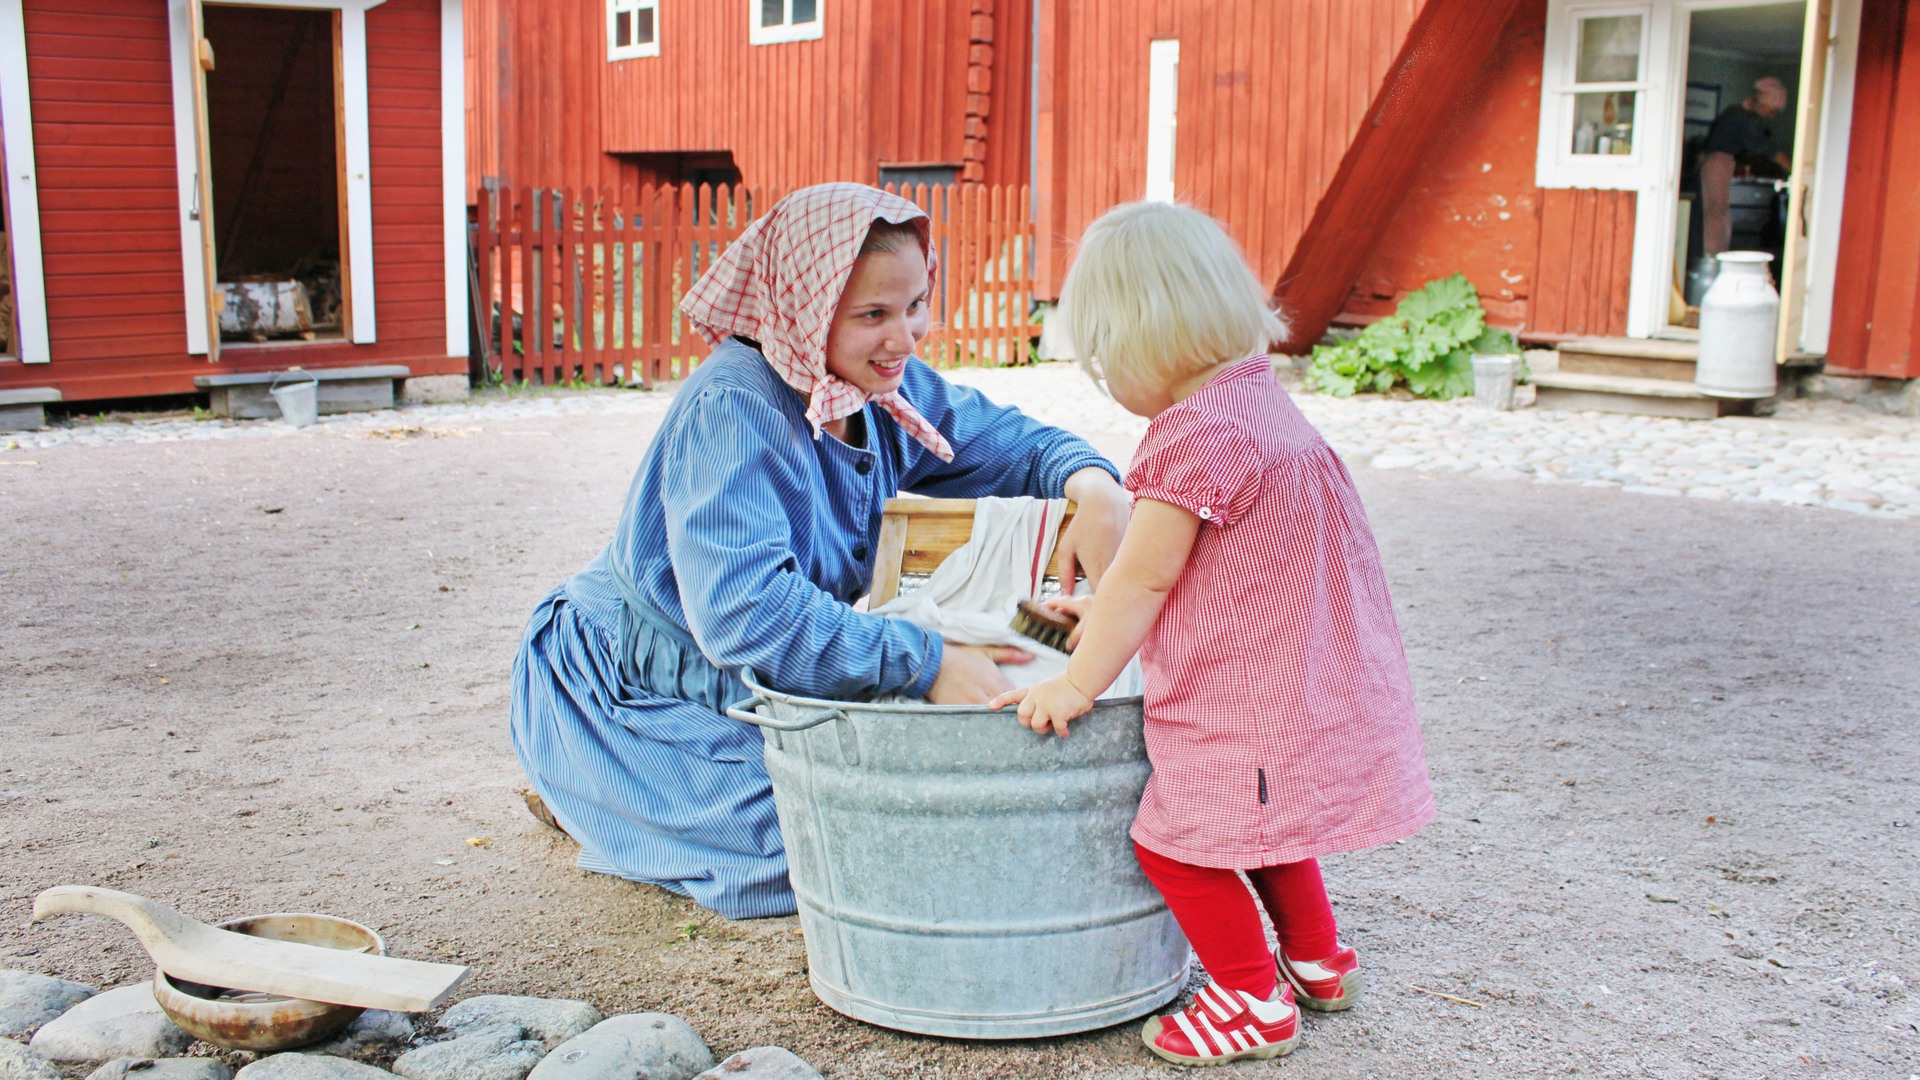 Gammaldags klädd kvinna tvättar kläder i en plåtbalja, en liten blond flicka tittar på.